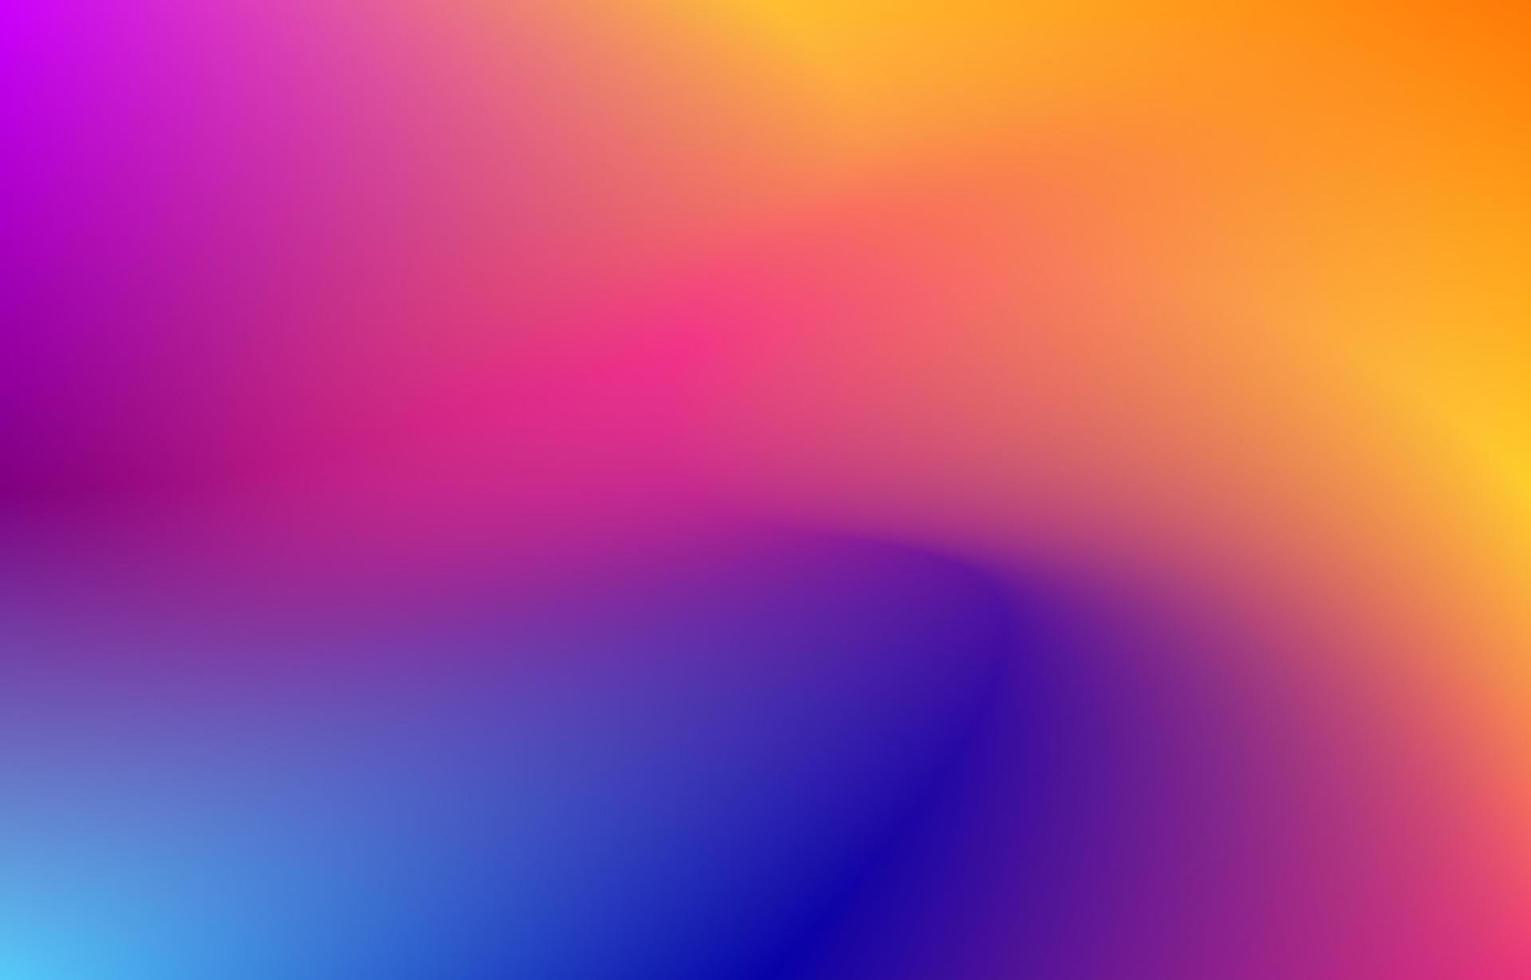 lutning flytande bakgrund med lila blå orange färg. jämn gradient vektorillustration. lämplig för bakgrund, webbdesign, banner, illustration och andra vektor